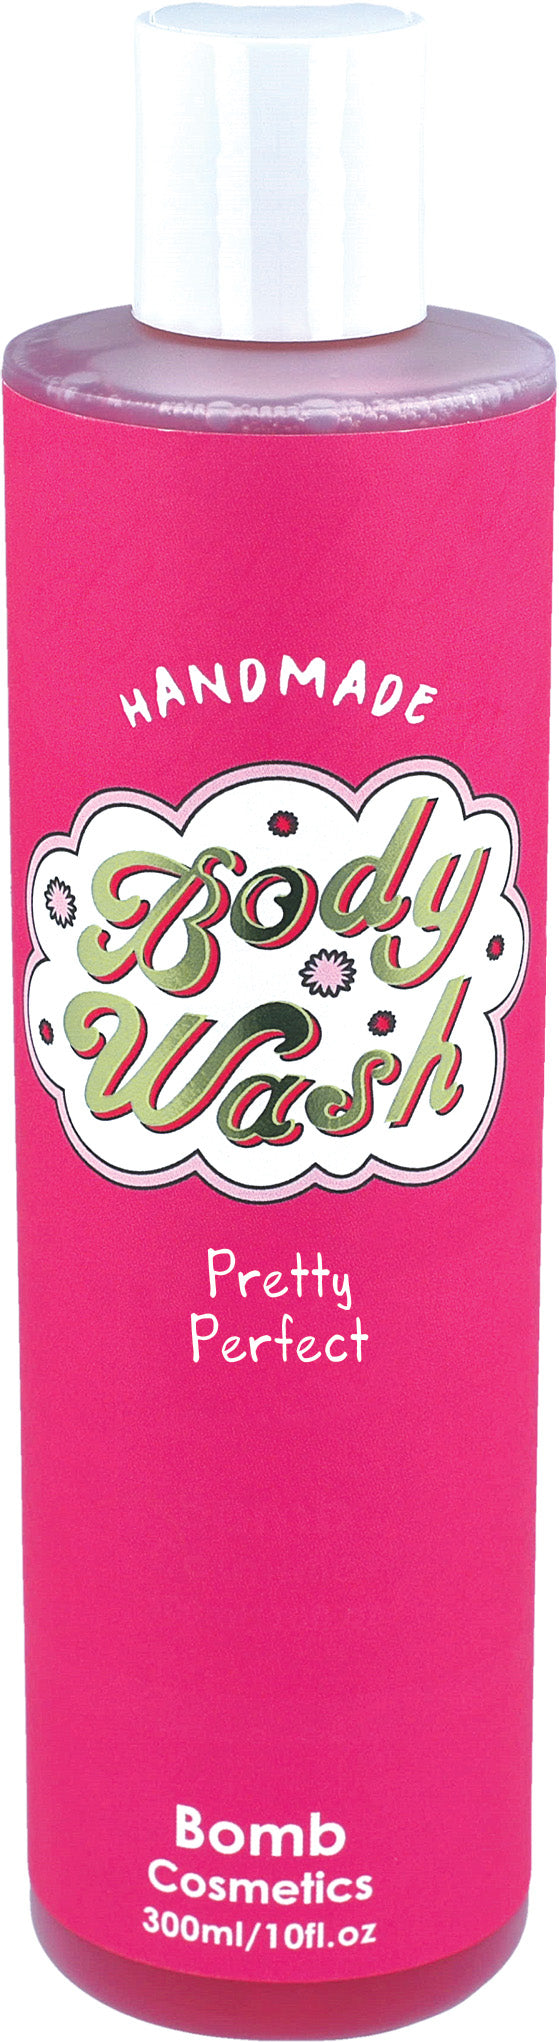 Bomb Cosmetics - Pretty Perfect - Body Wash - 300ml